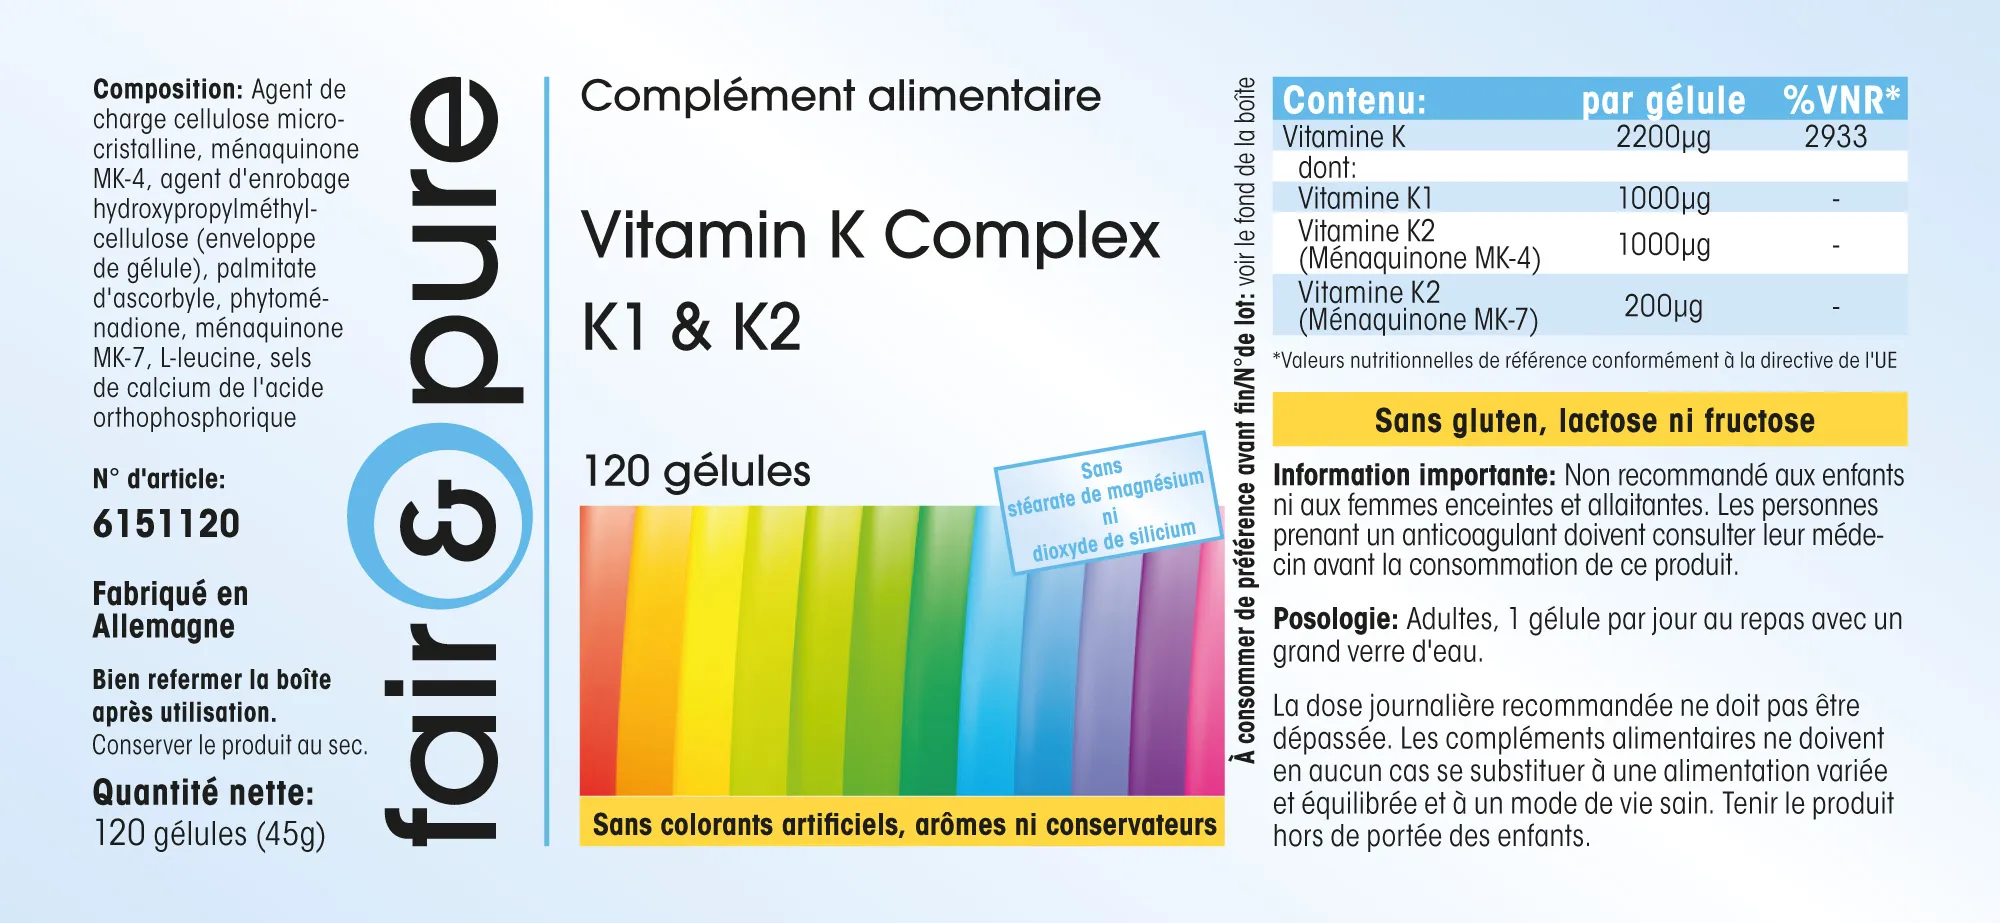 Complesso di Vitamina K